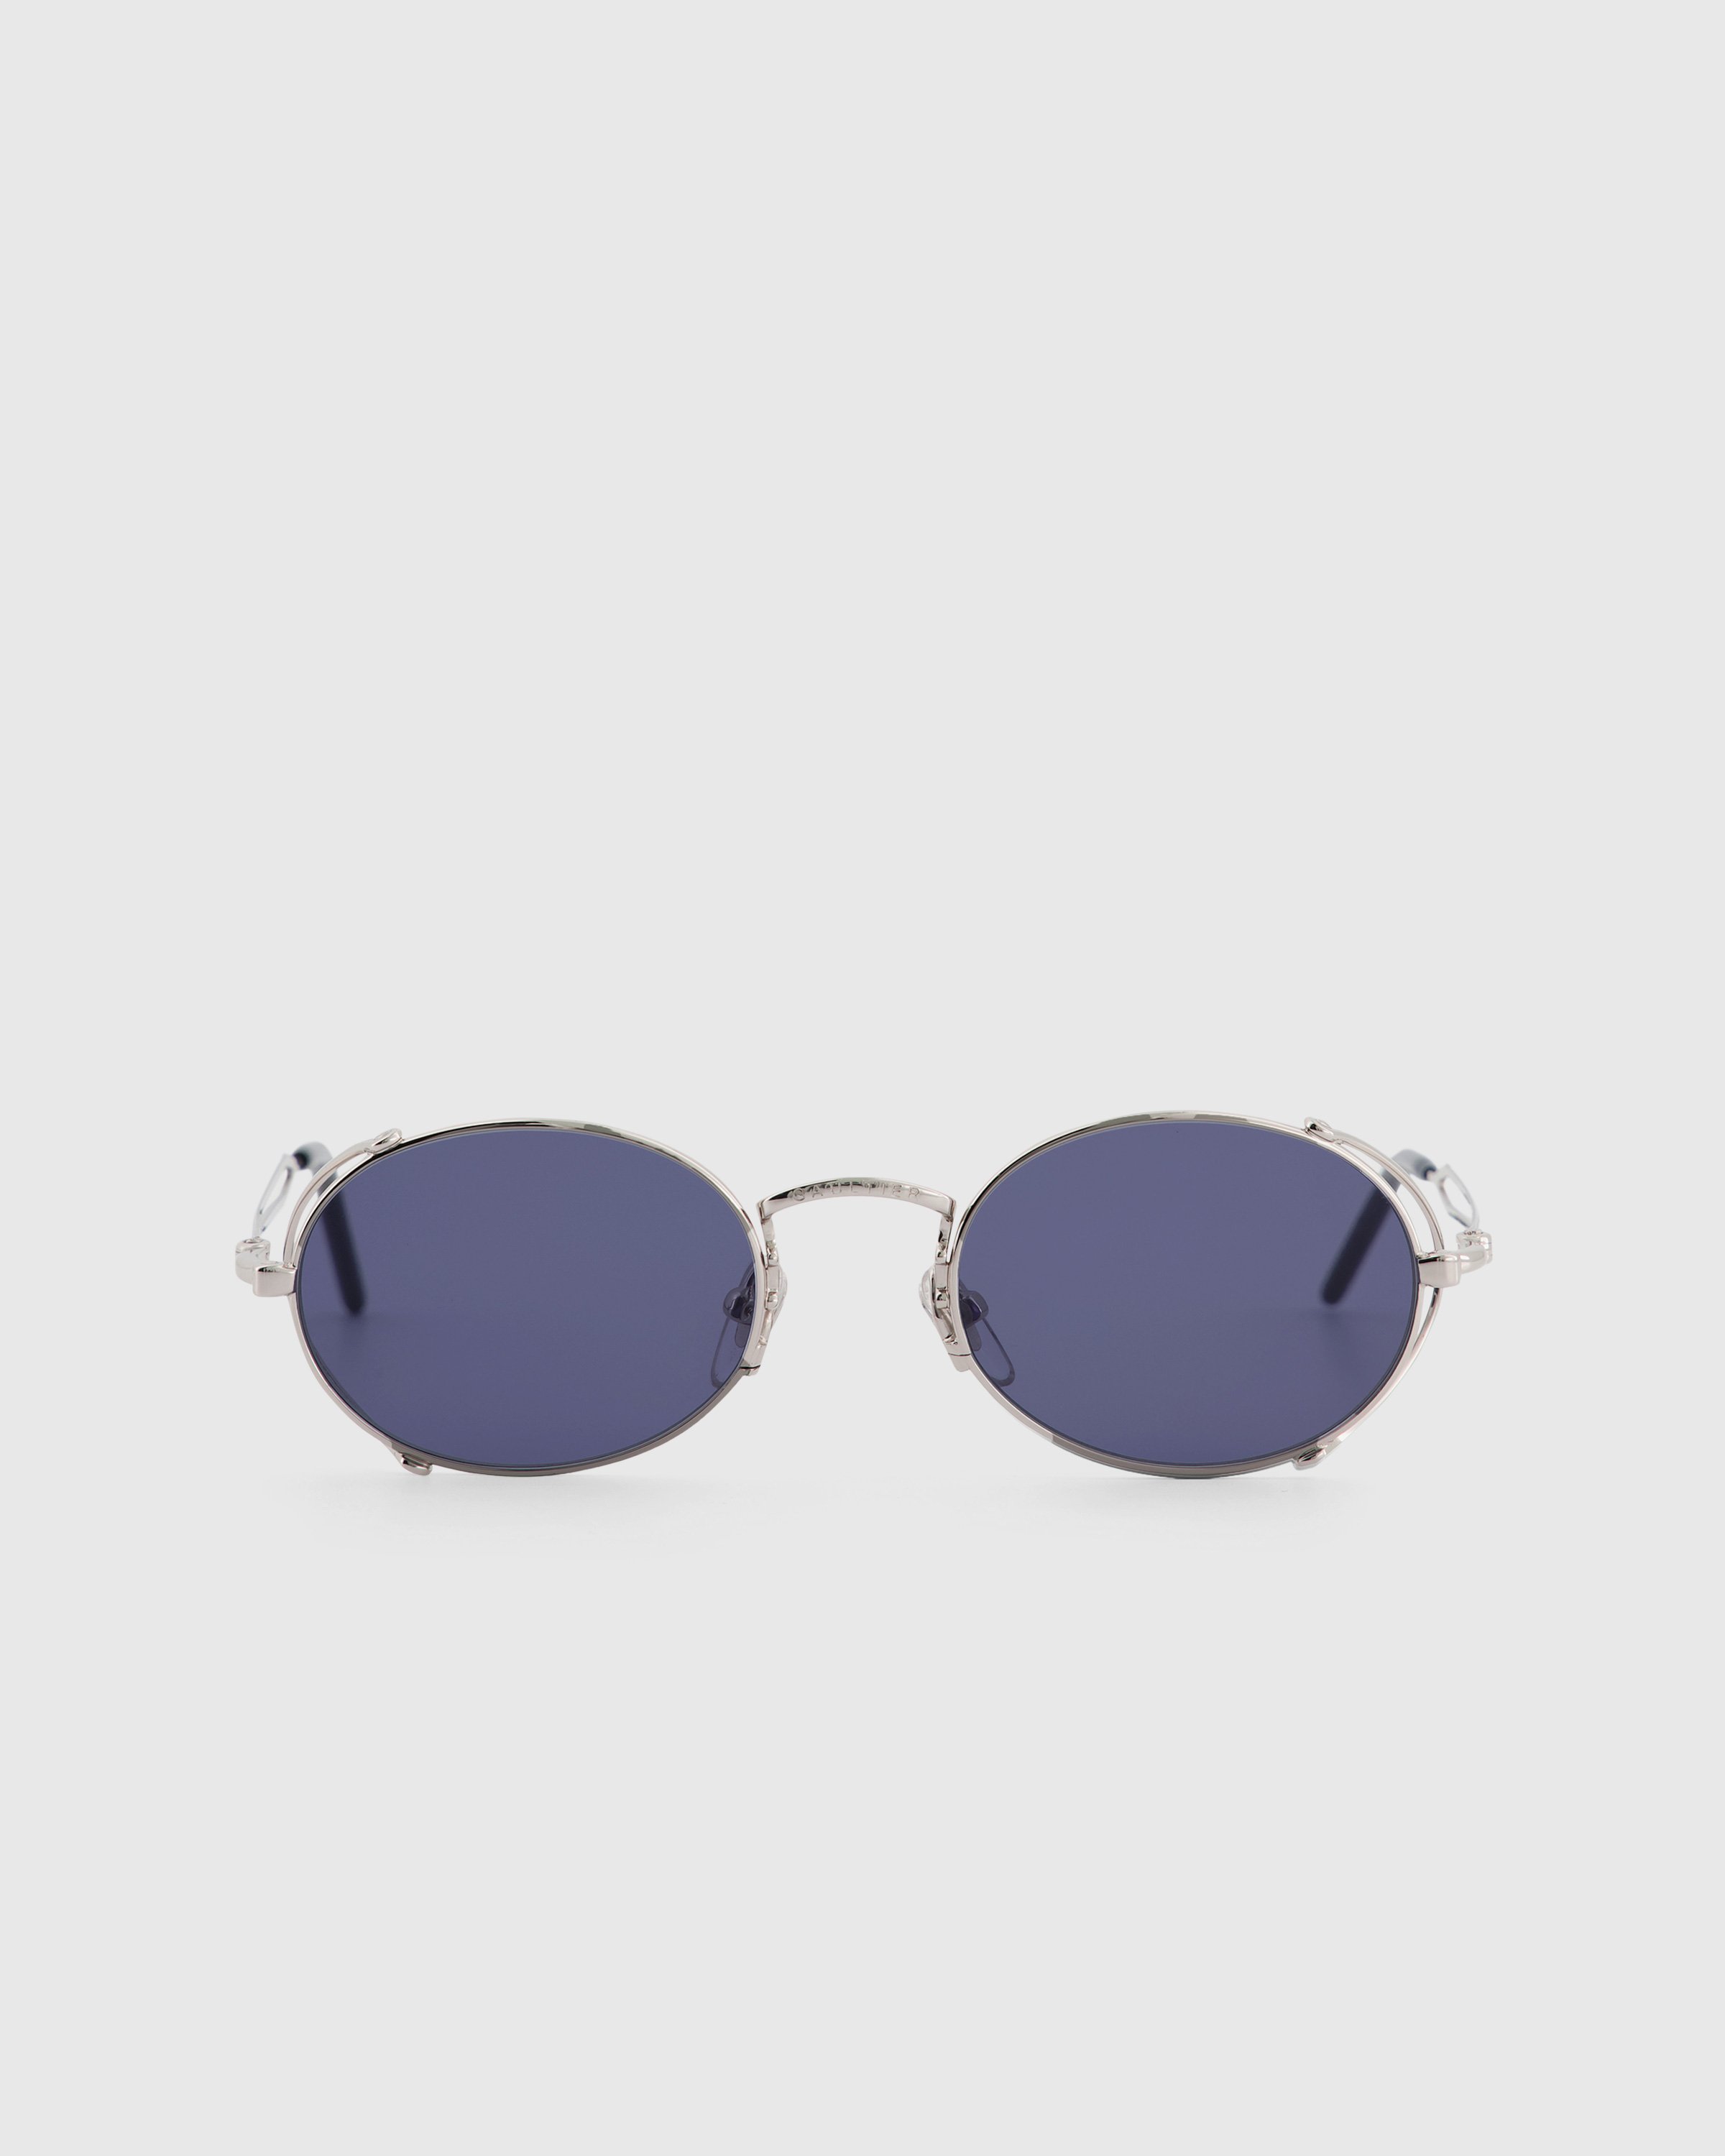 Jean Paul Gaultier x Burna Boy - 55-3175 Arceau Sunglasses Silver - Accessories - Silver - Image 1